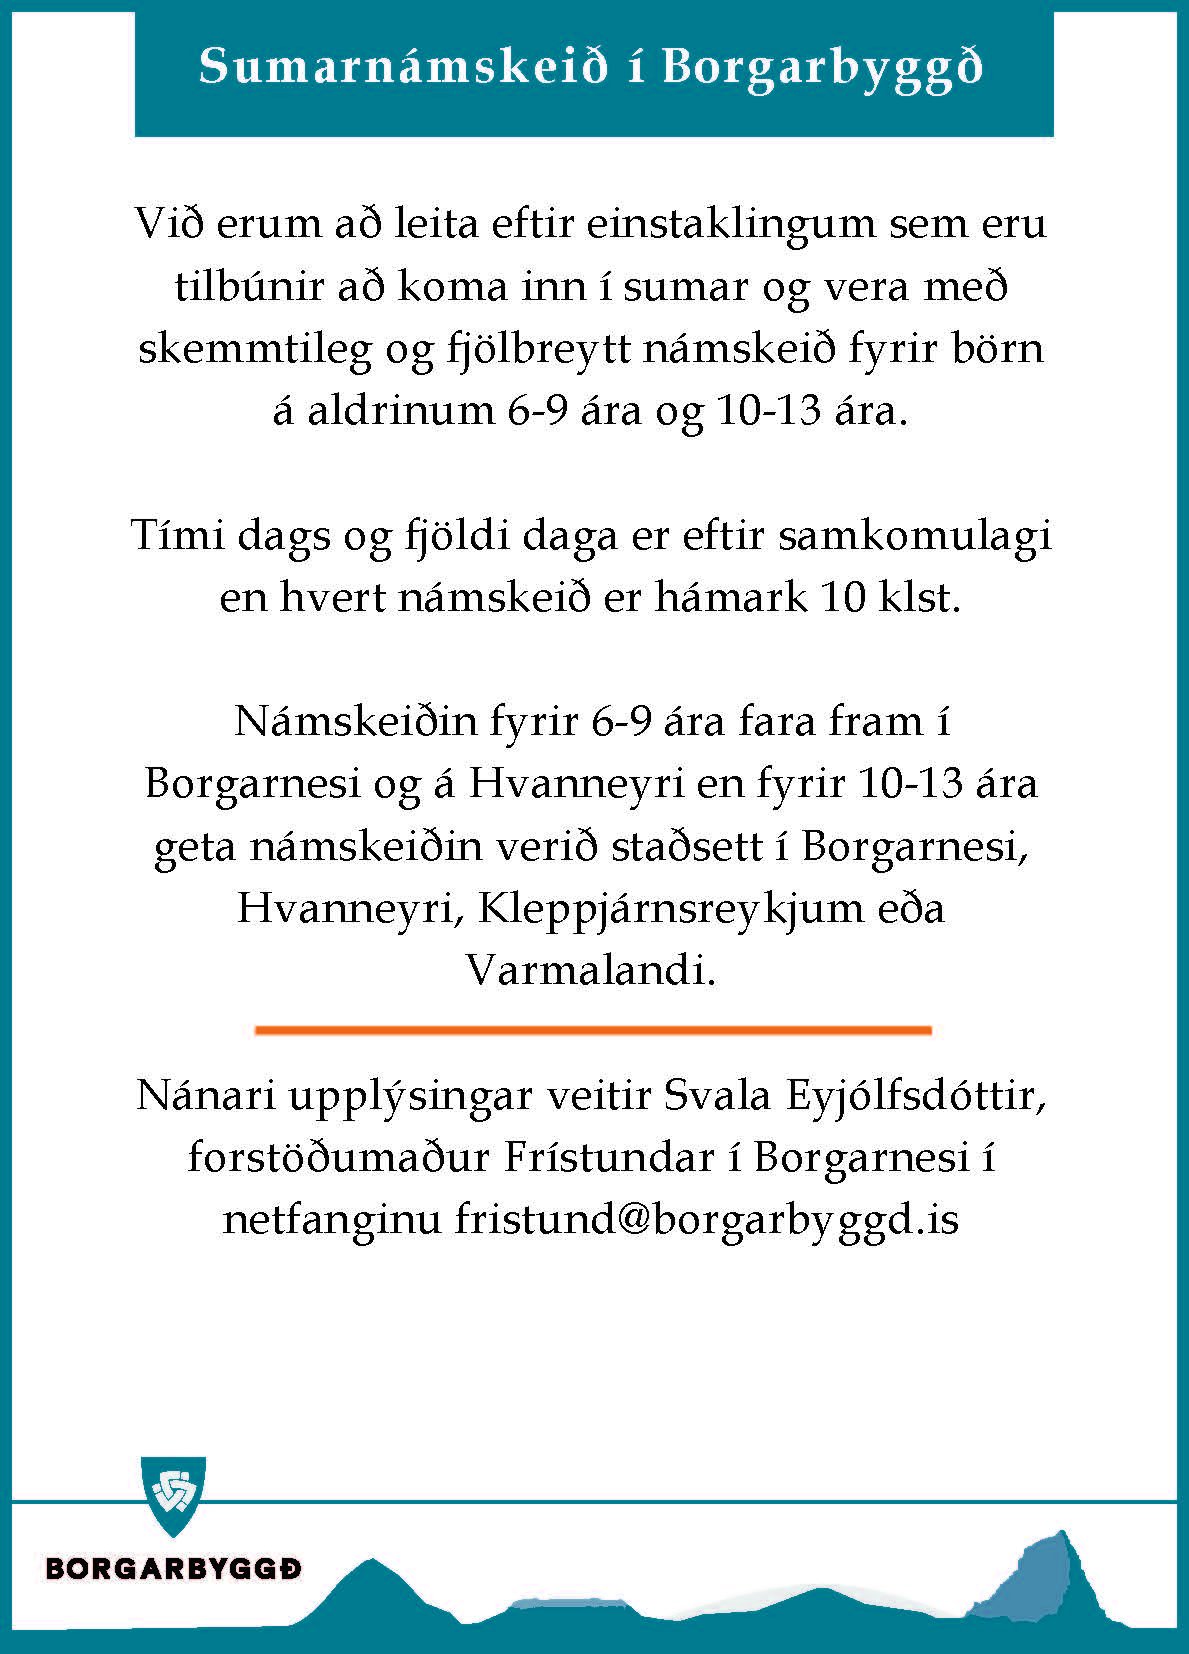 Featured image for “Sumarnámskeið í Borgarbyggð”